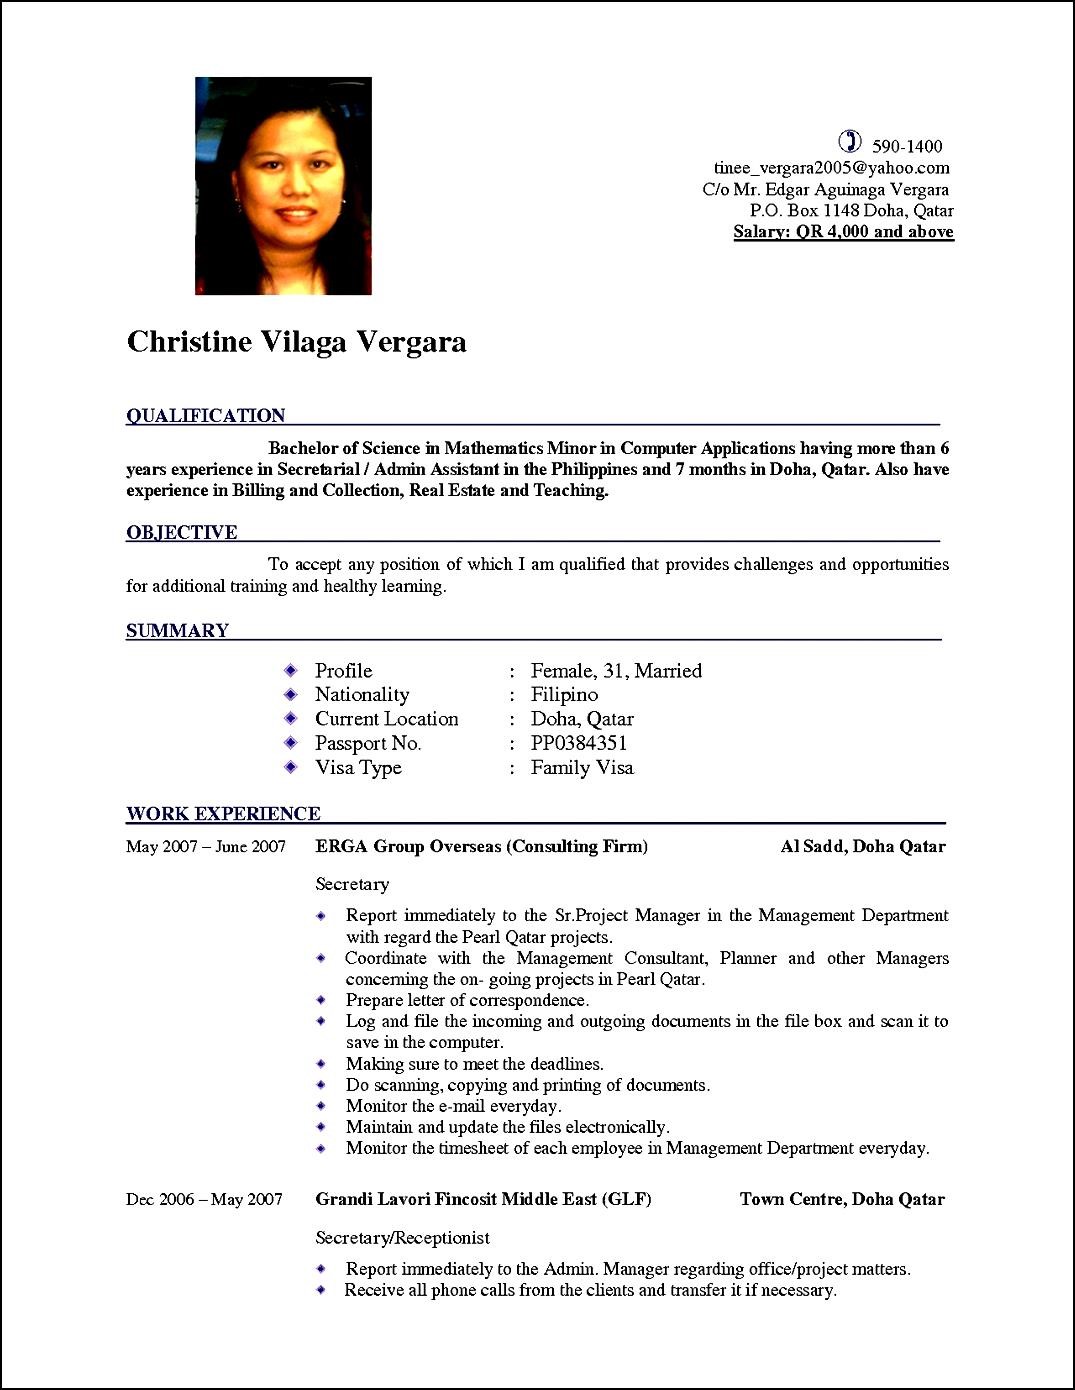 curriculum vitae - cv resume - cv login